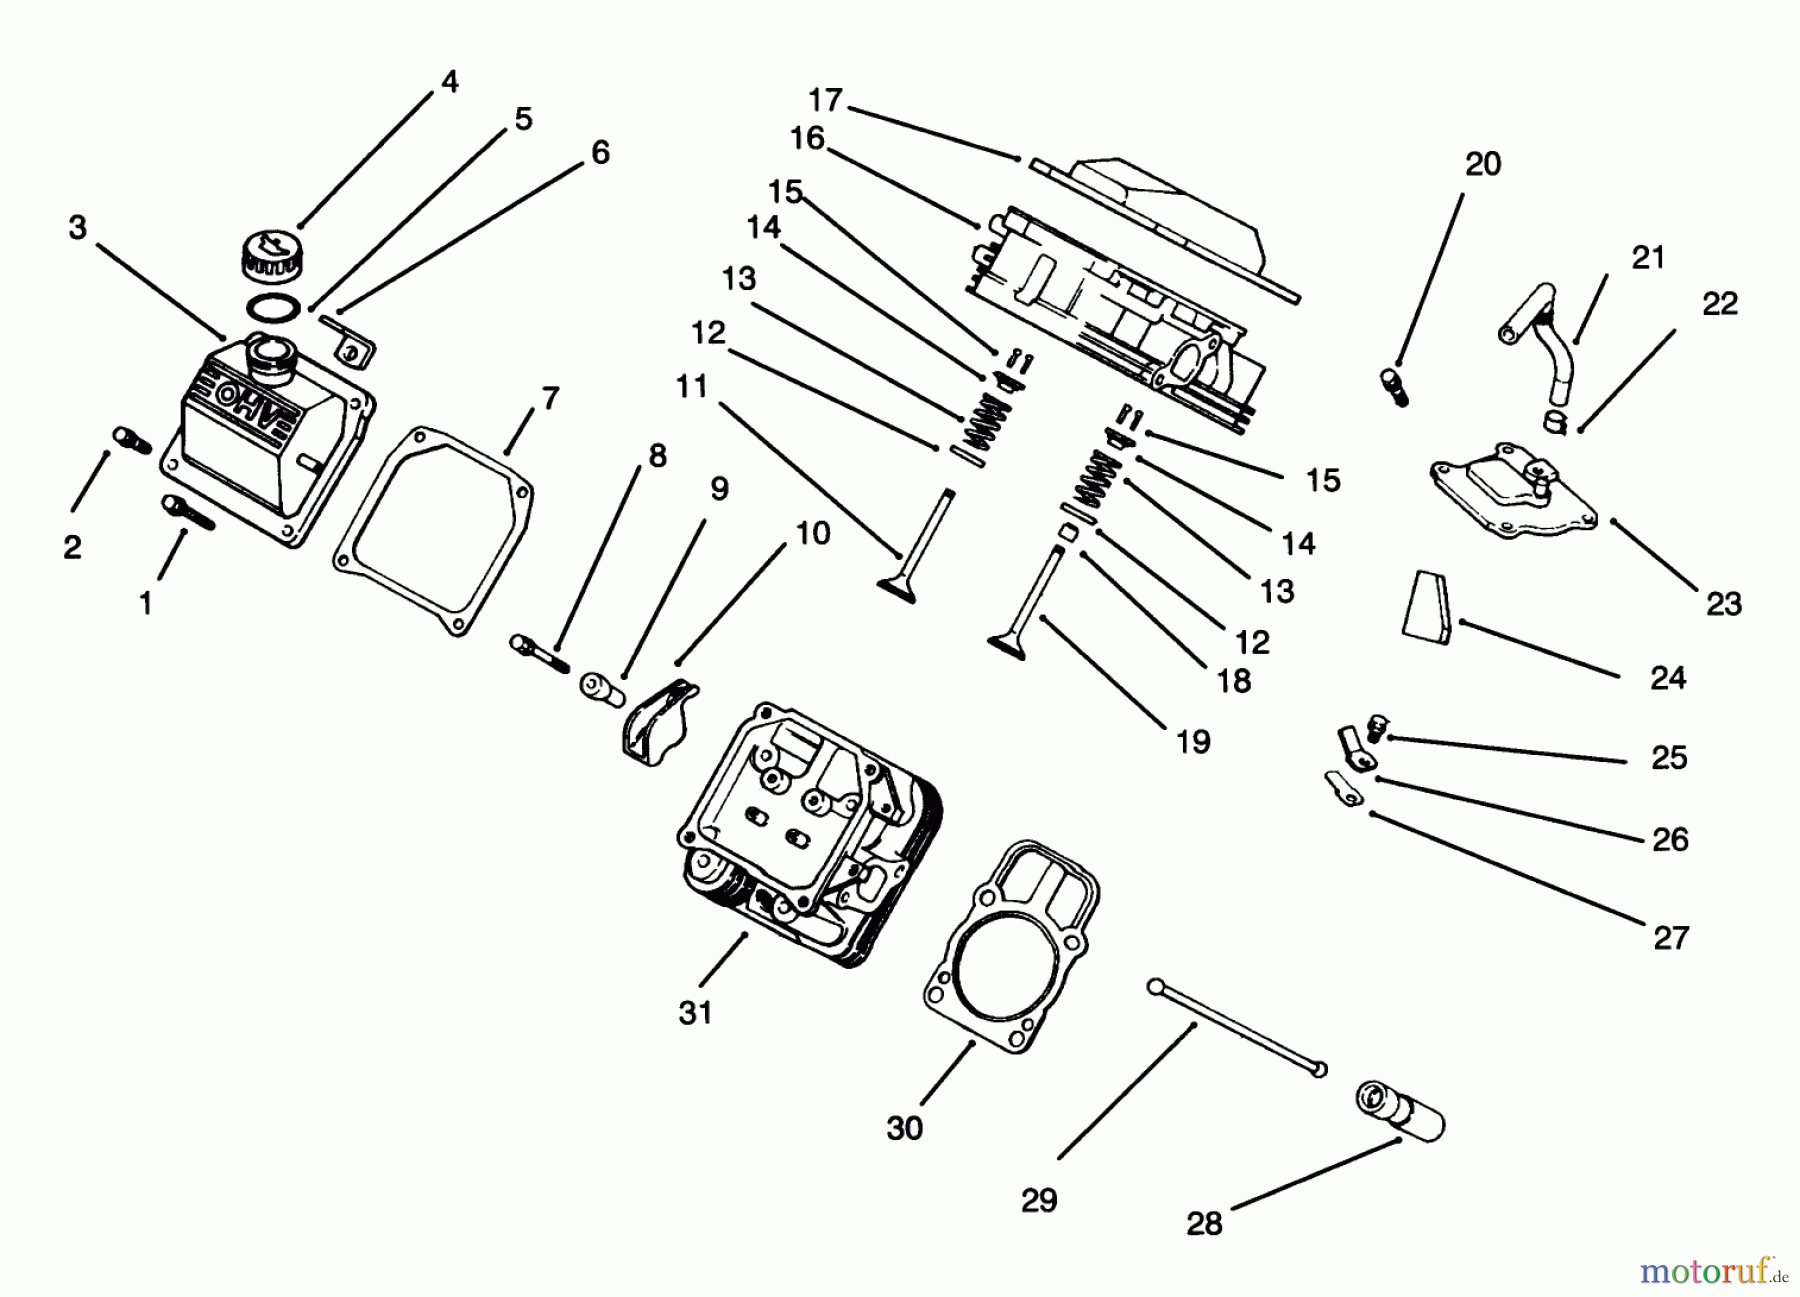  Toro Neu Mowers, Lawn & Garden Tractor Seite 1 30610 (120) - Toro Proline 120, 1993 (390001-399999) CYLINDER HEAD, VALVE & BREATHER